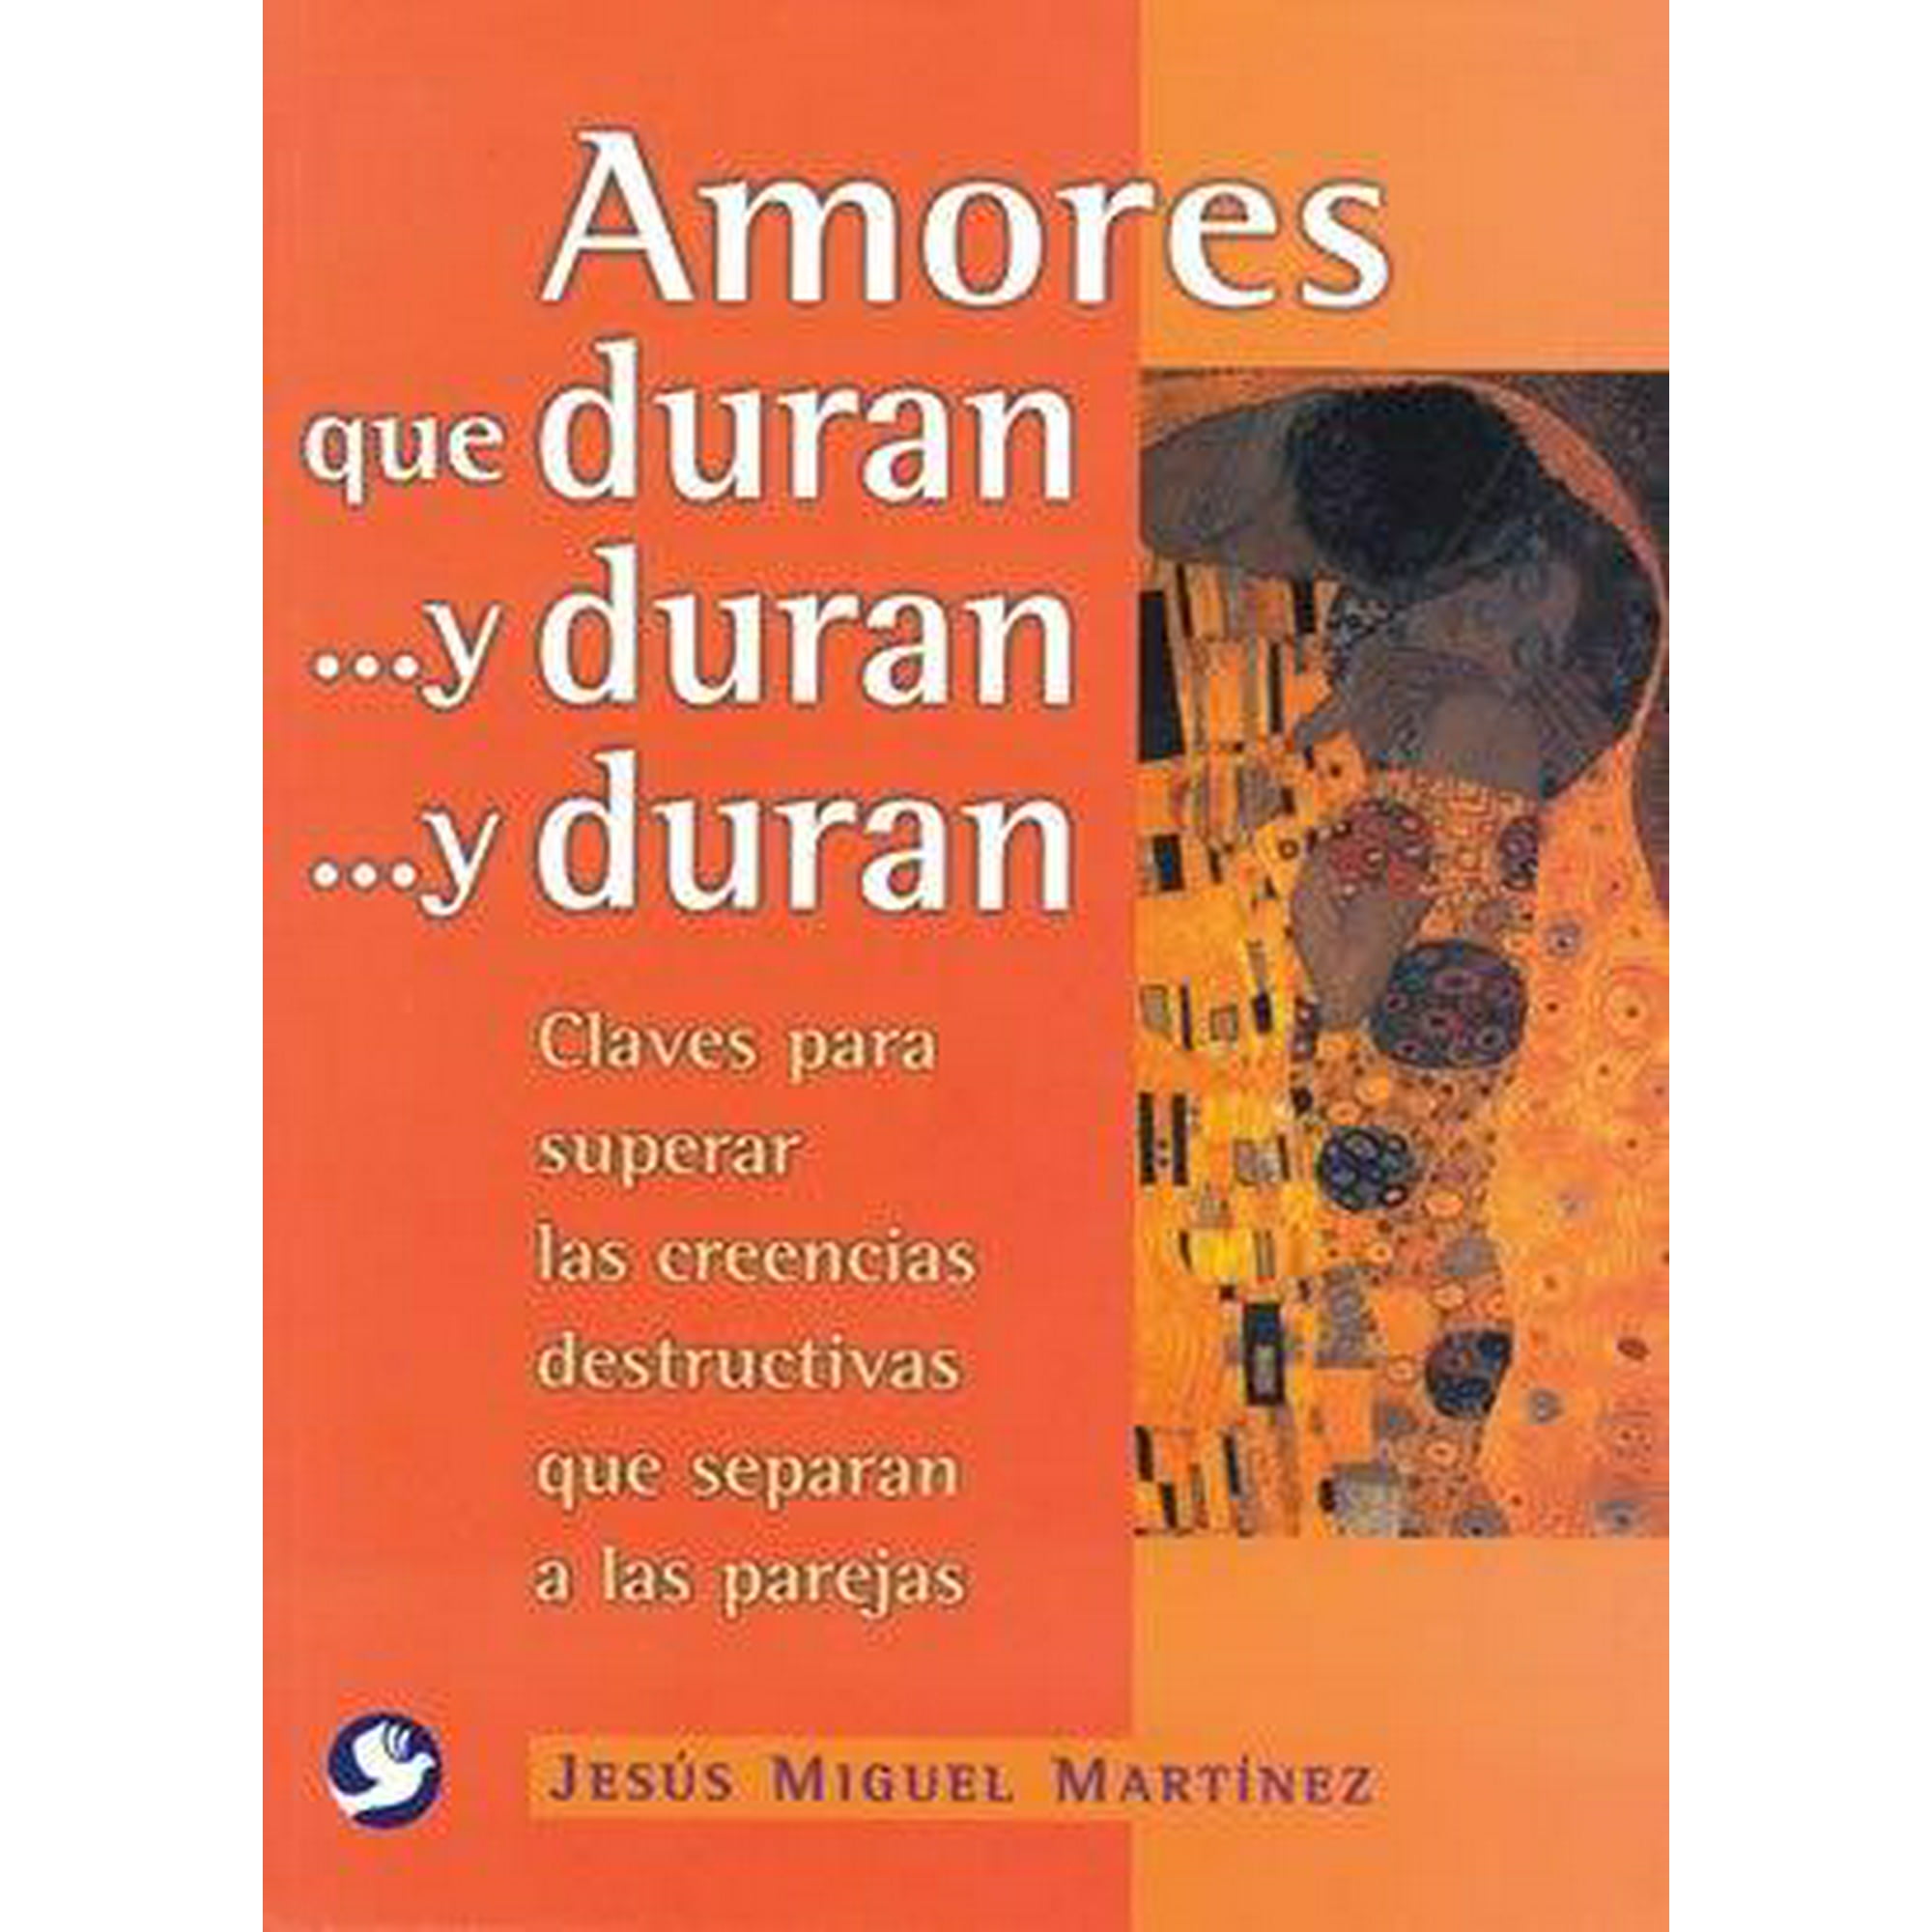 Amores Que Durany Durany Duran Editorial Terracota 9789688607824 Bodega Aurrera En Línea 3255